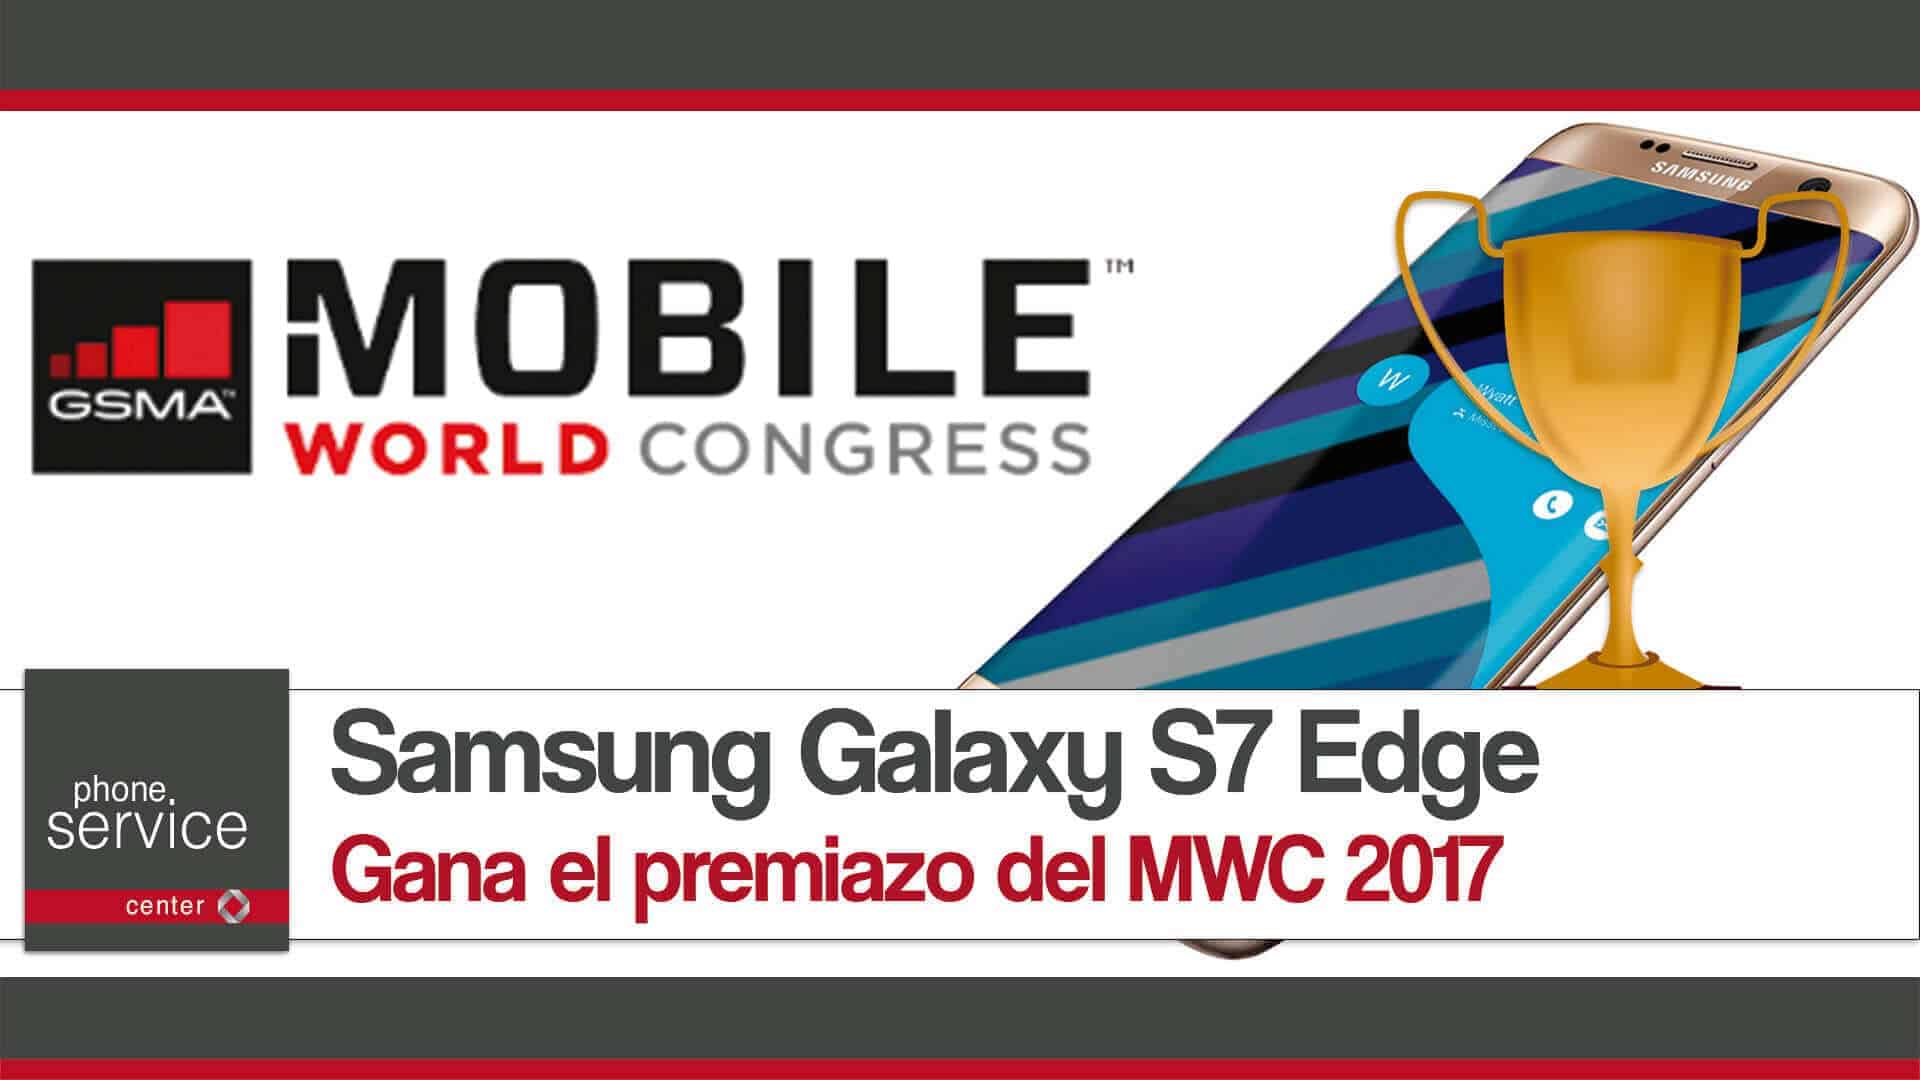 MWC 2017 da el premio al mejor smartphone al Samsung Galaxy S7 Edge